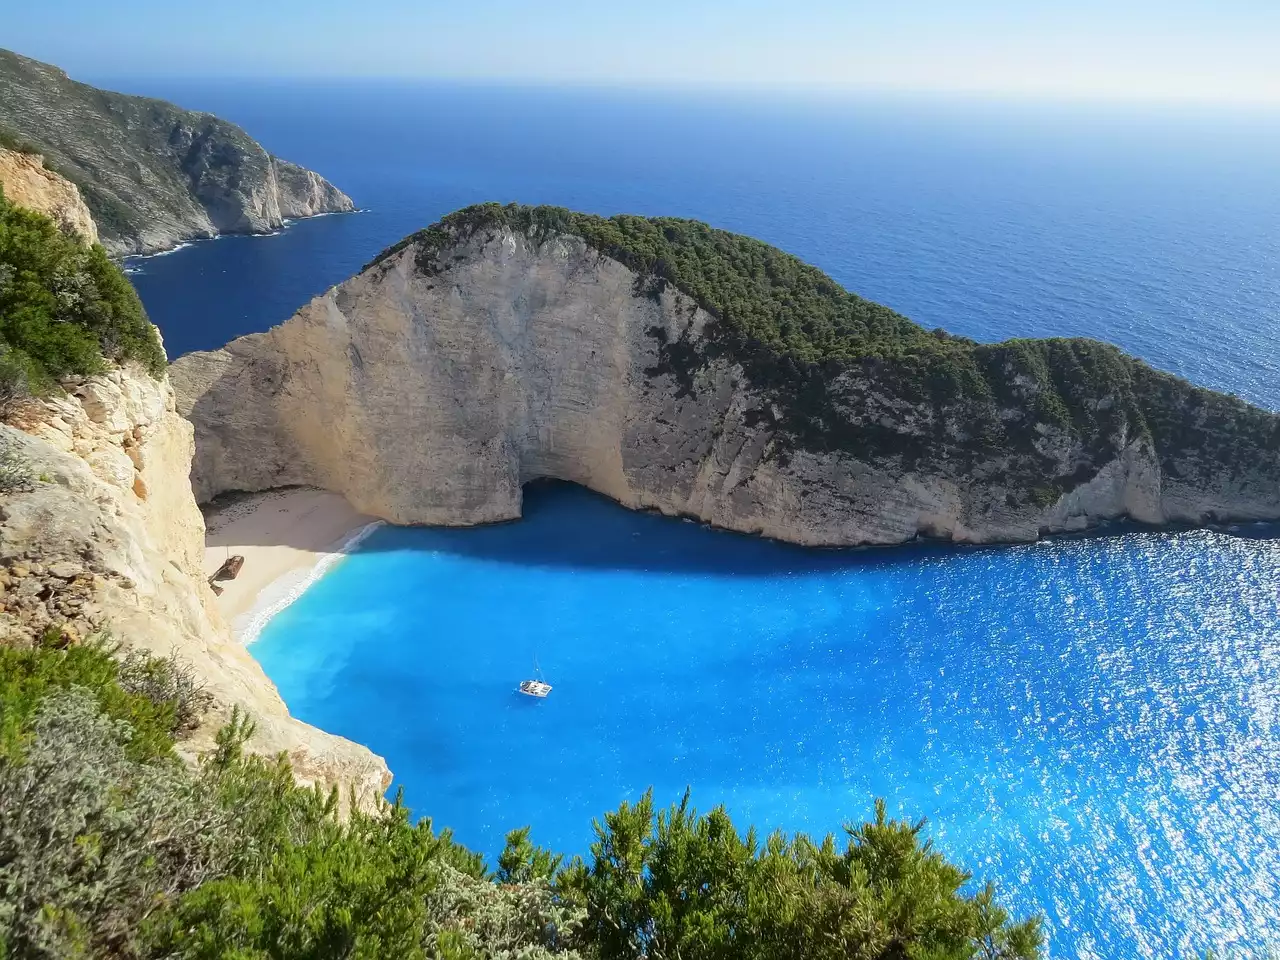 רשימת הביקורת האולטימטיבית שלך לפני הנסיעה: 10 דברים שכדאי לעשות לפני שתחקור את פלאי יוון